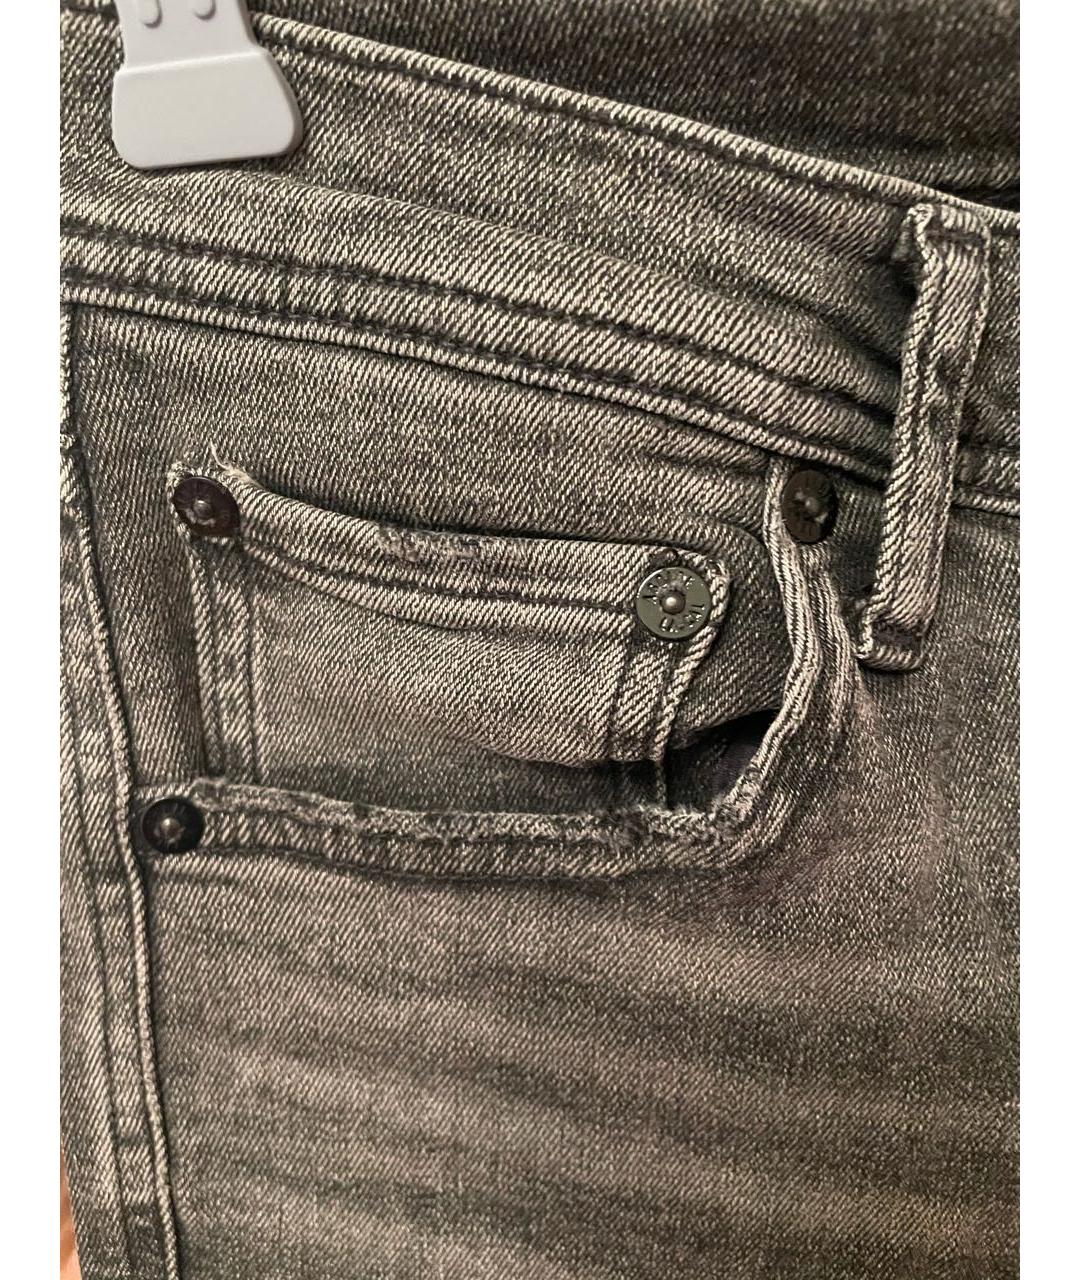 AGOLDE Серые хлопковые джинсы слим, фото 4